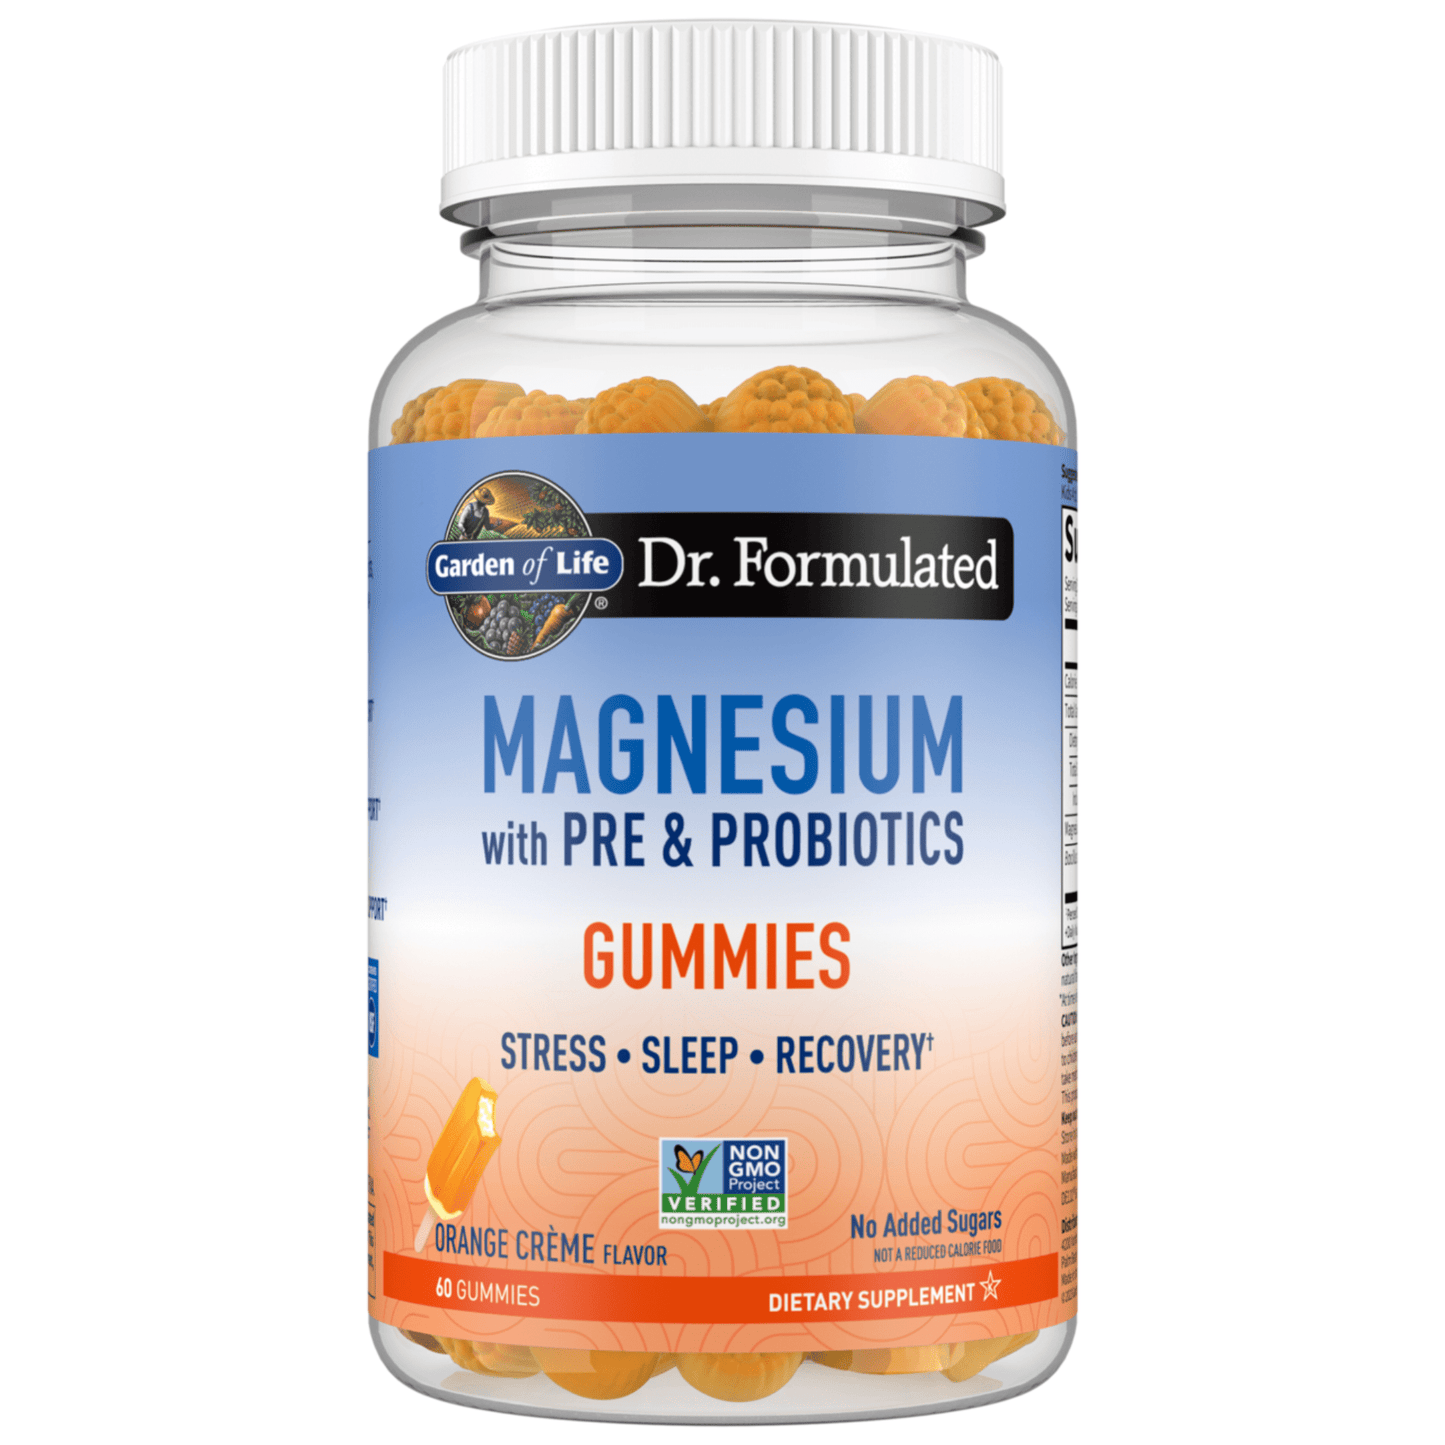 Primary Image of Magnesium Gummies Orange Creme